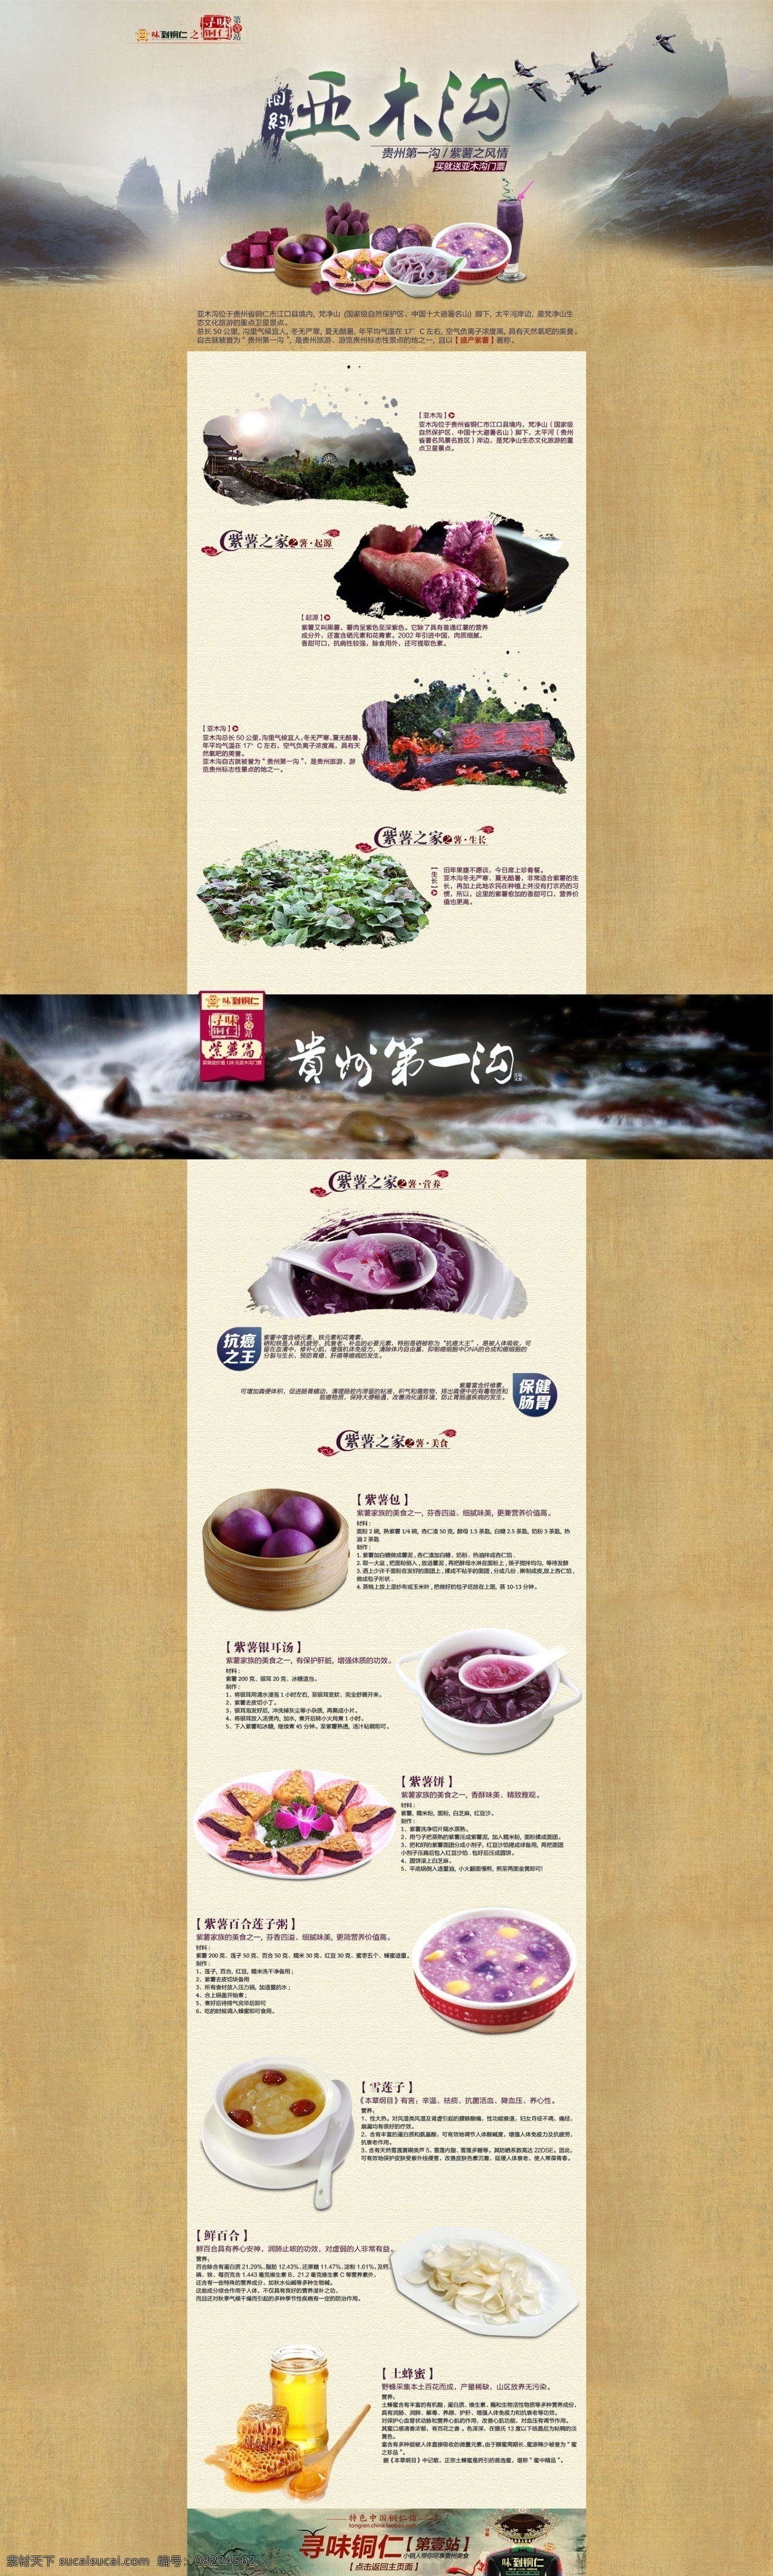 地方特产 食品 页面 土特产 紫薯 贵州旅游 原创设计 原创淘宝设计